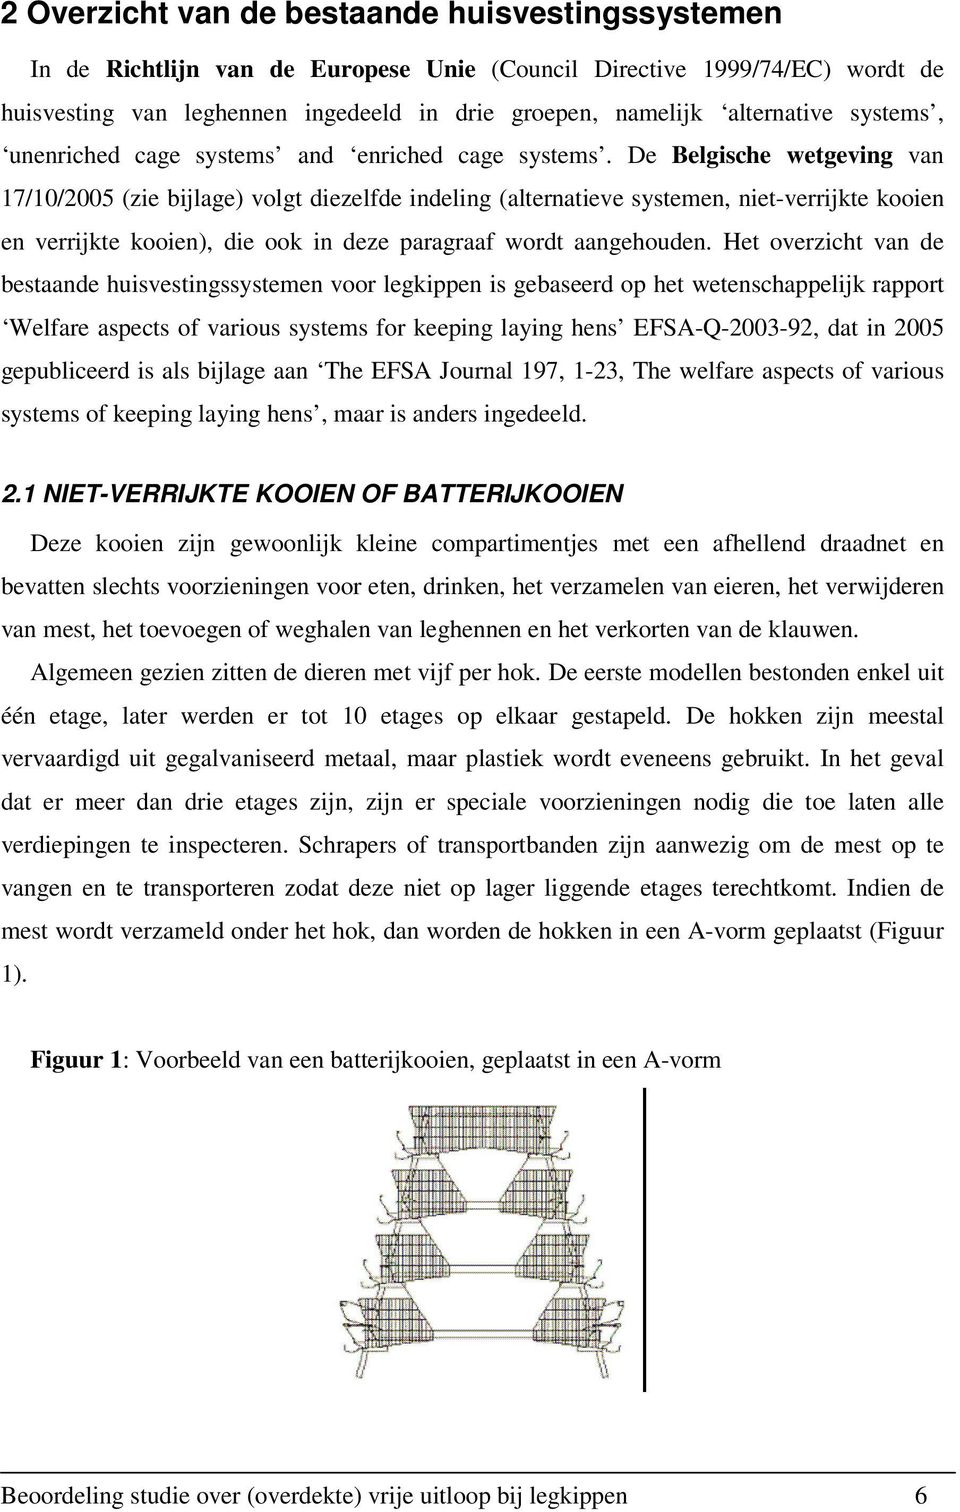 De Belgische wetgeving van 17/10/2005 (zie bijlage) volgt diezelfde indeling (alternatieve systemen, niet-verrijkte kooien en verrijkte kooien), die ook in deze paragraaf wordt aangehouden.